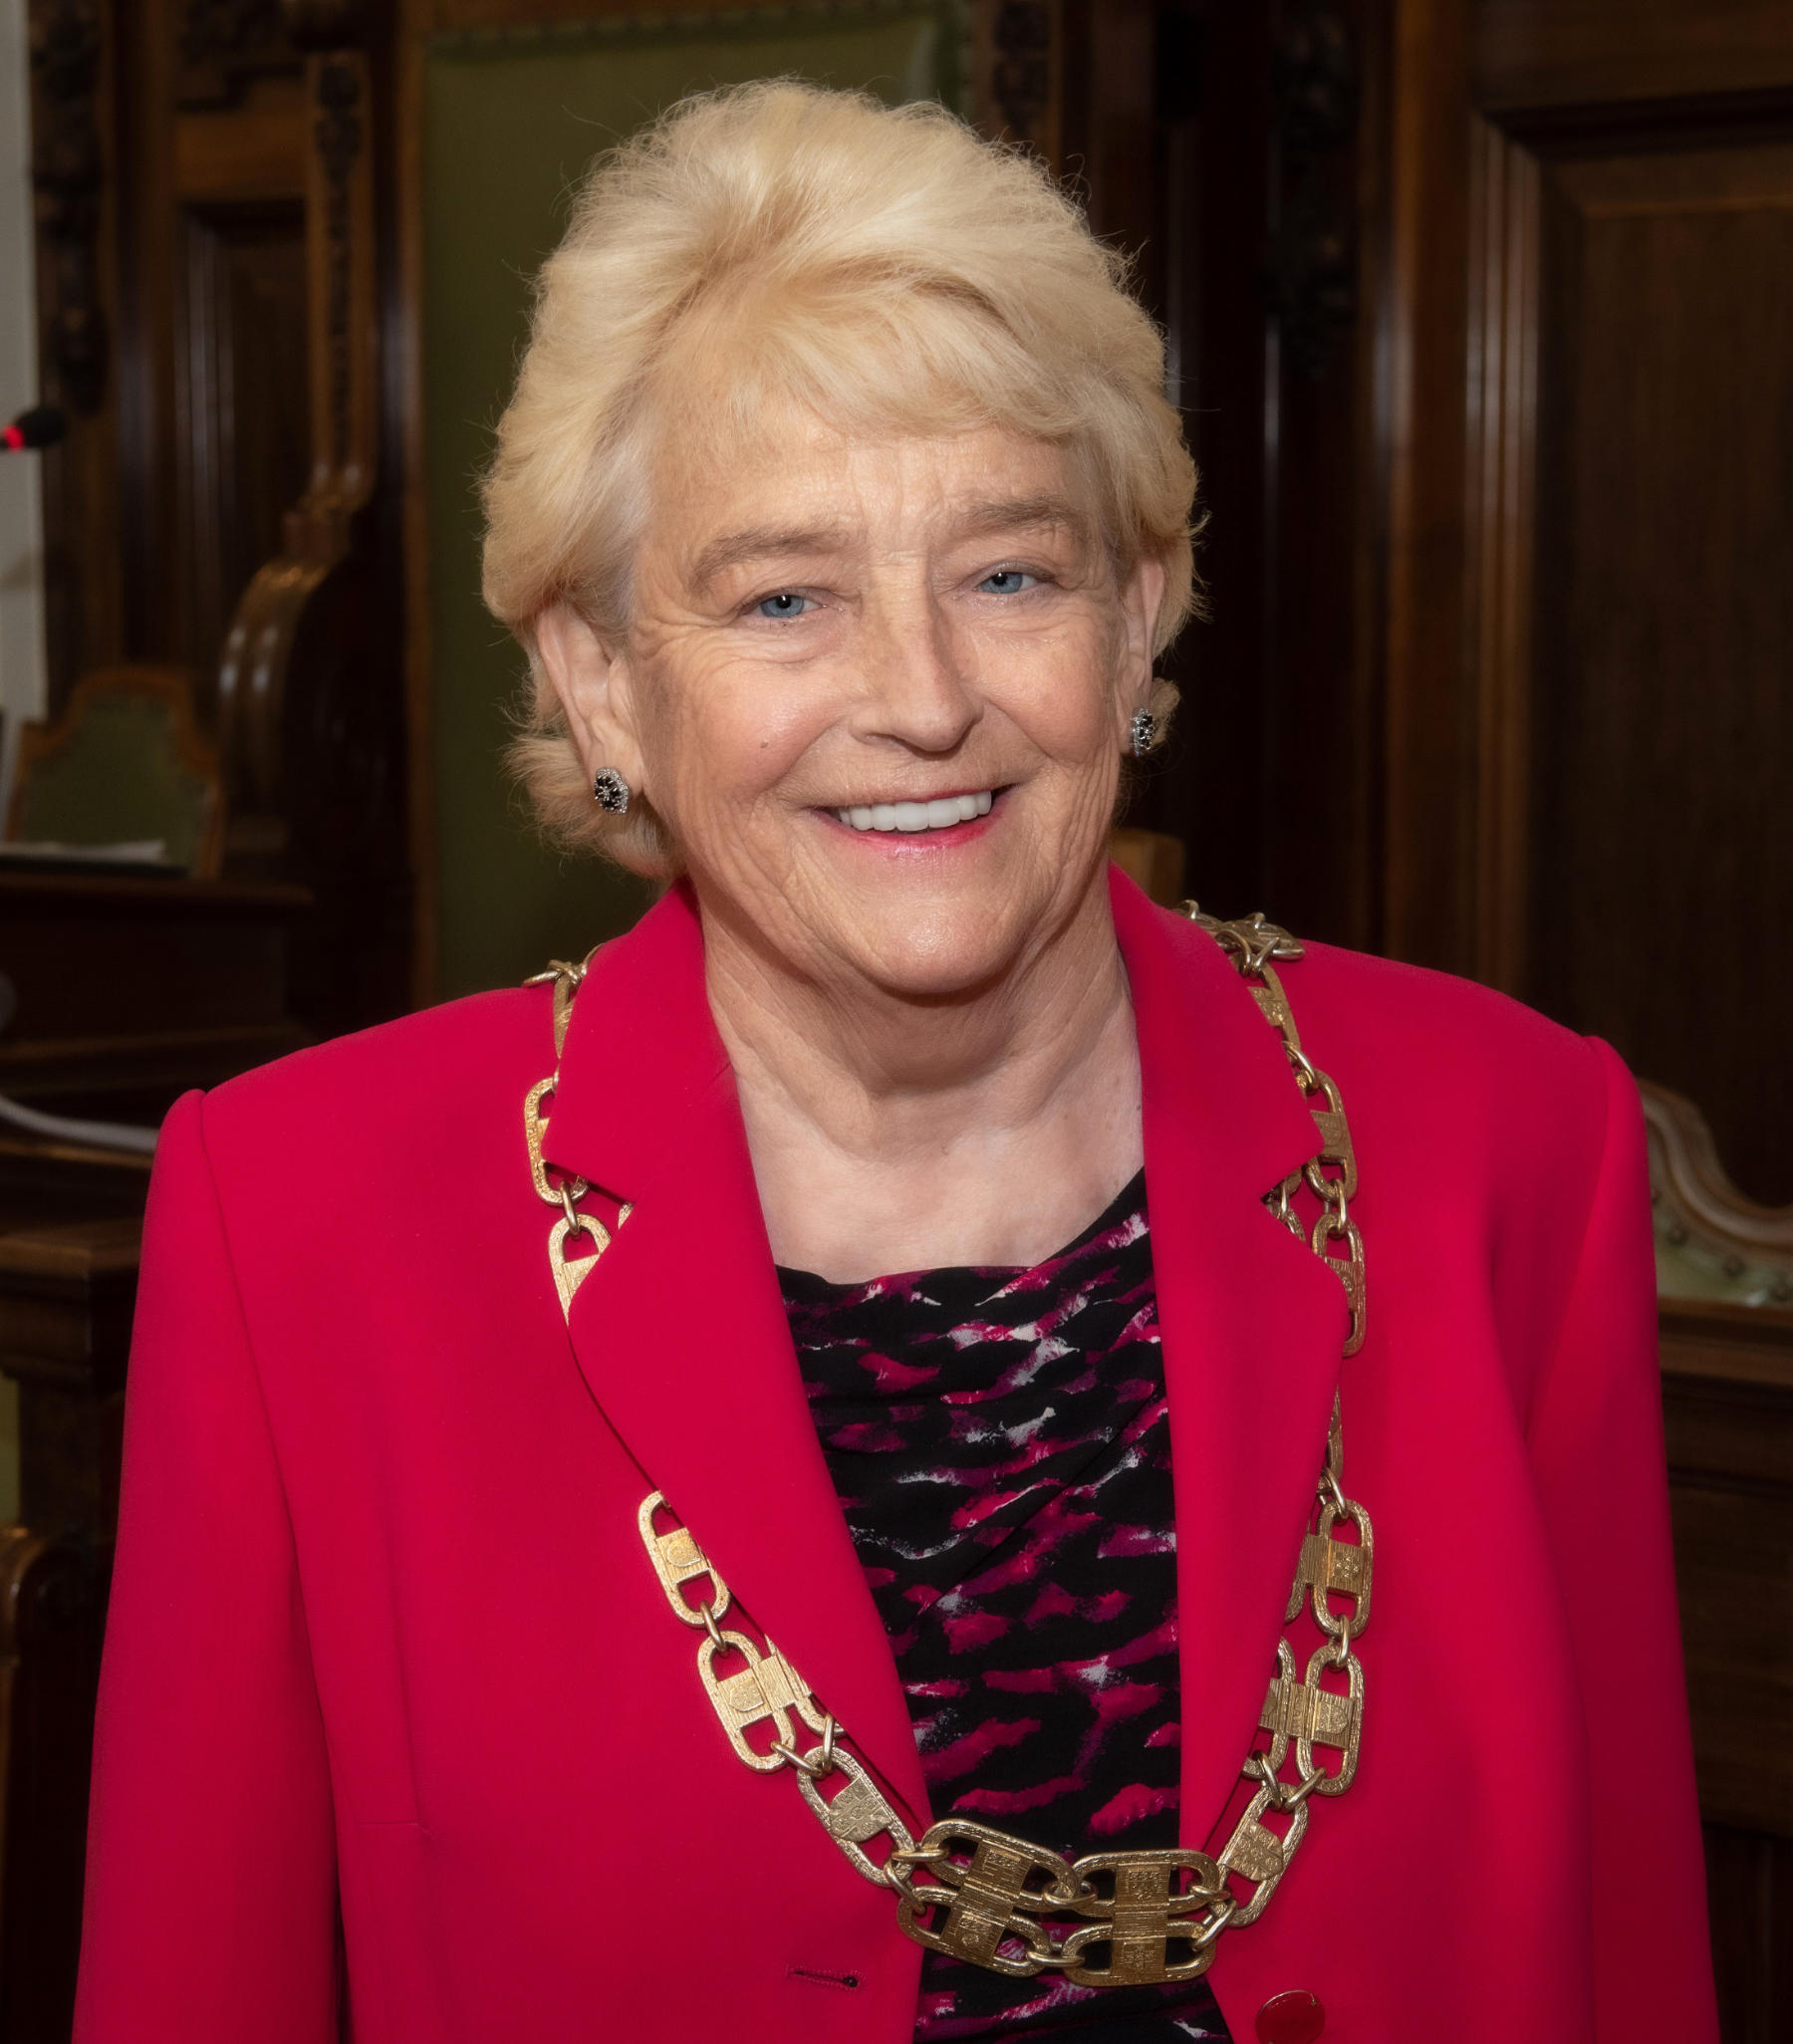 Council chairwoman Margaret Atkinson